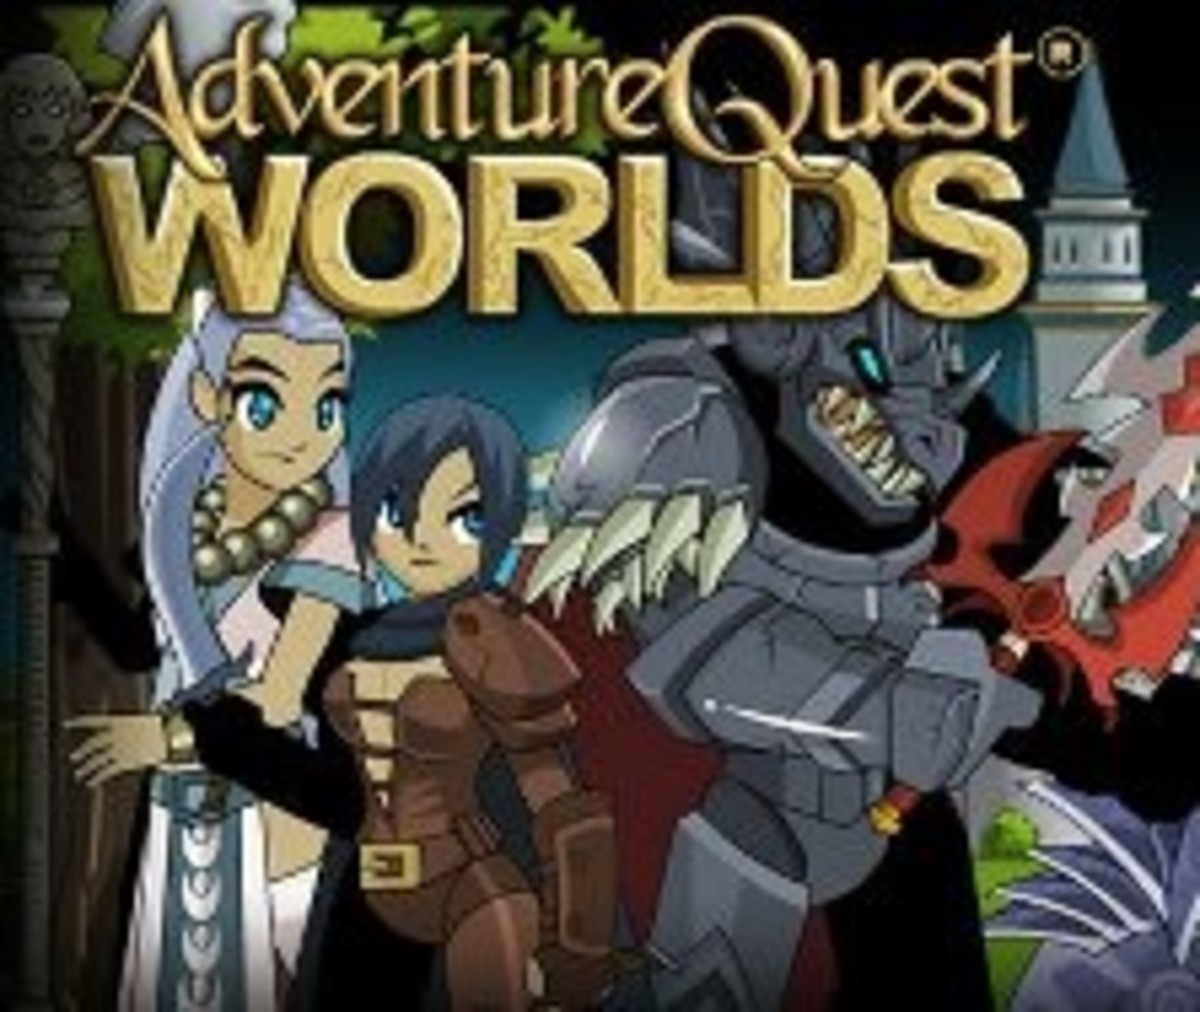 adventure quest worlds